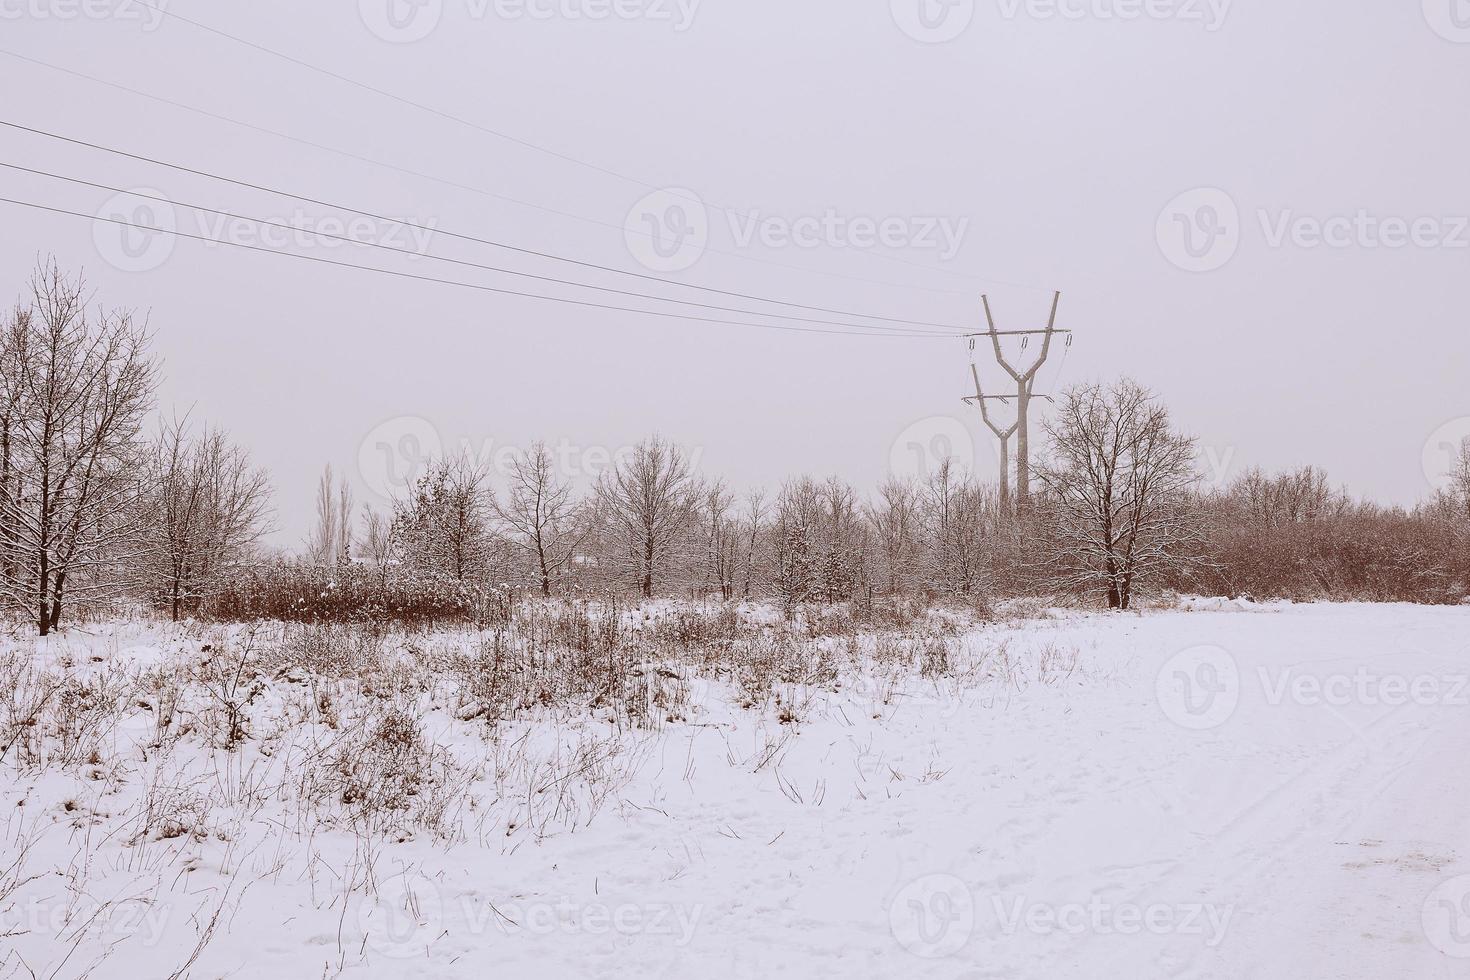 winter natuurlijk landschap met met sneeuw bedekt bomen in de Woud en een versmallen pad foto